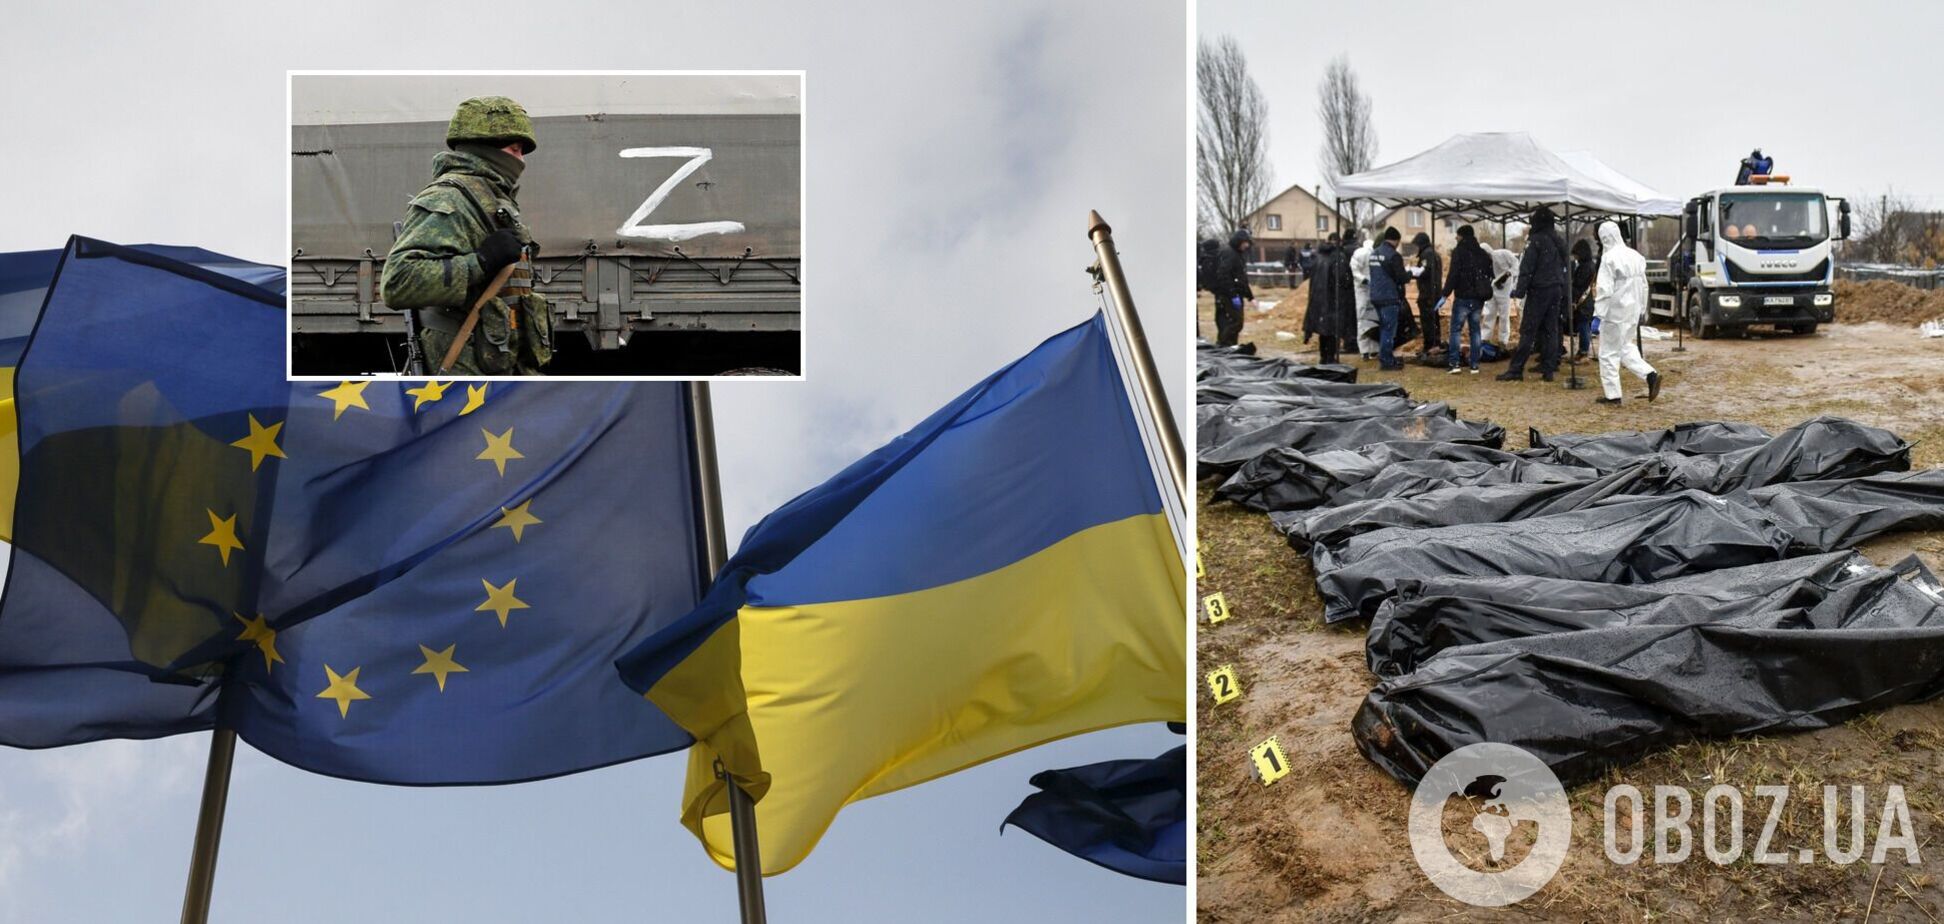 Евросоюз направит в Украину 54 советника для расследования военных преступлений РФ